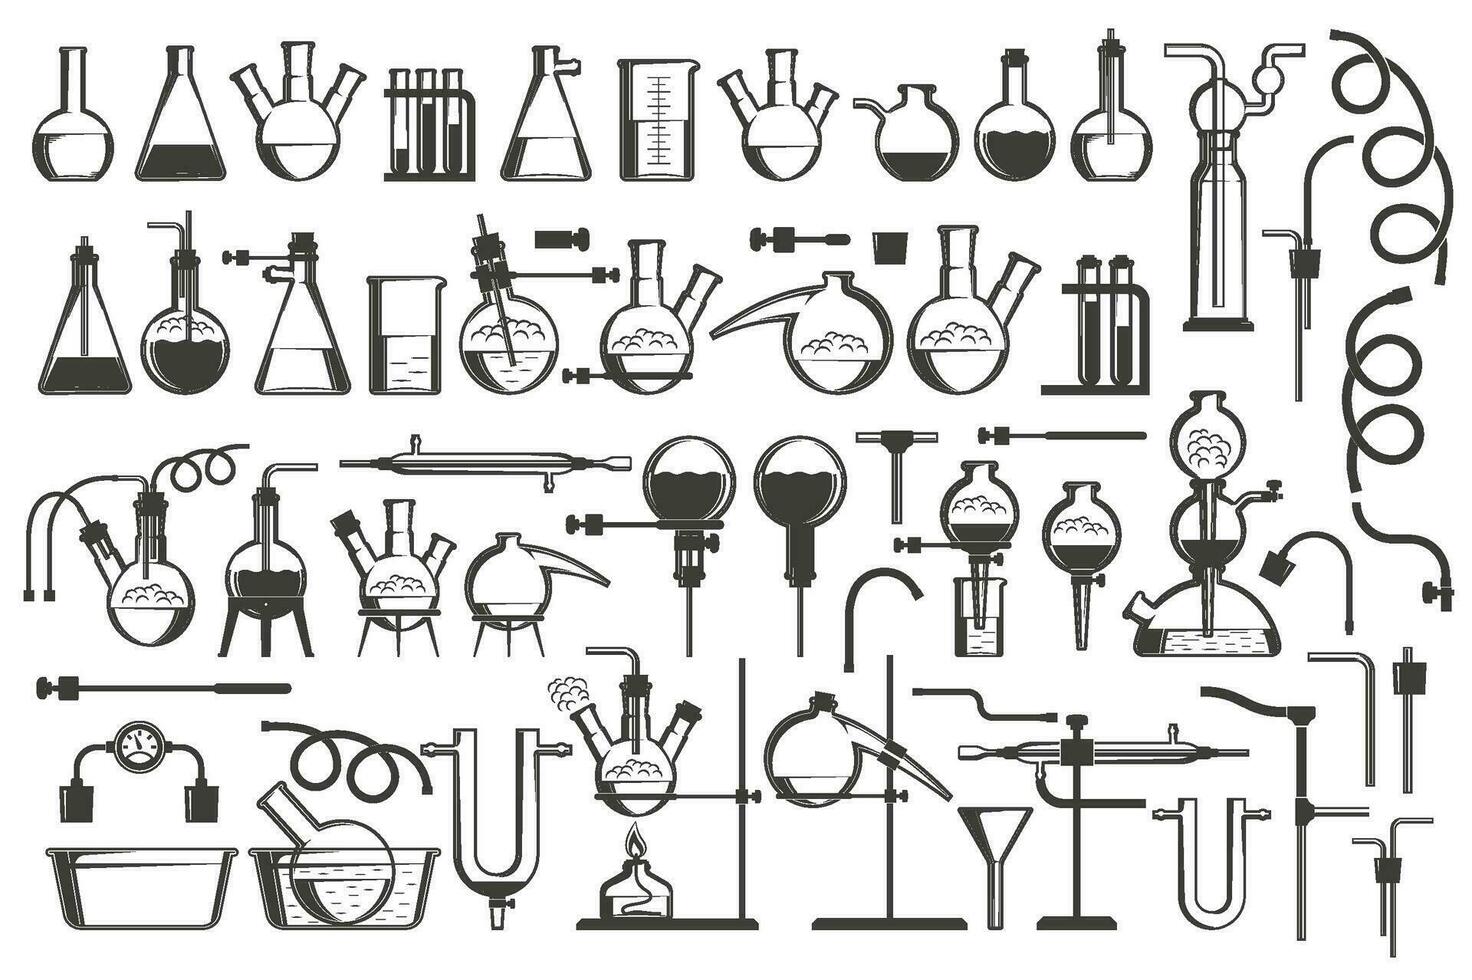 kemisk vetenskap design element bra uppsättning - Utrustning, flaskor, svarar, behållare, ställ, slangar och så på. vektor